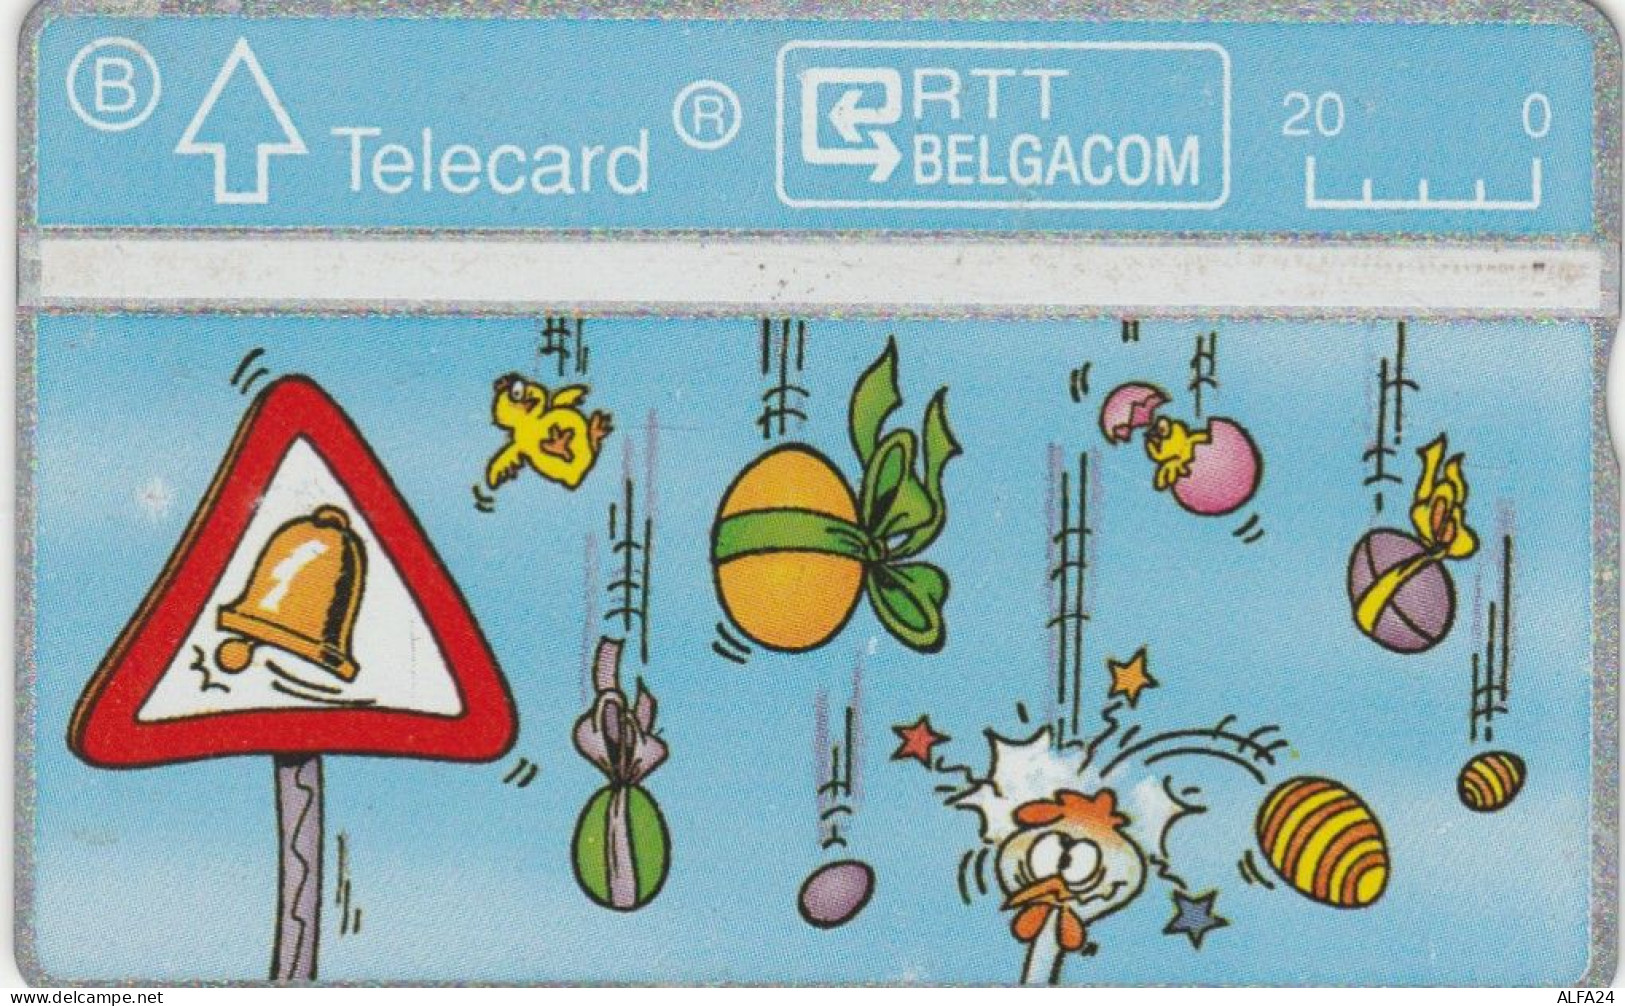 PHONE CARD BELGIO CARTOONS (E95.15.6 - Ohne Chip